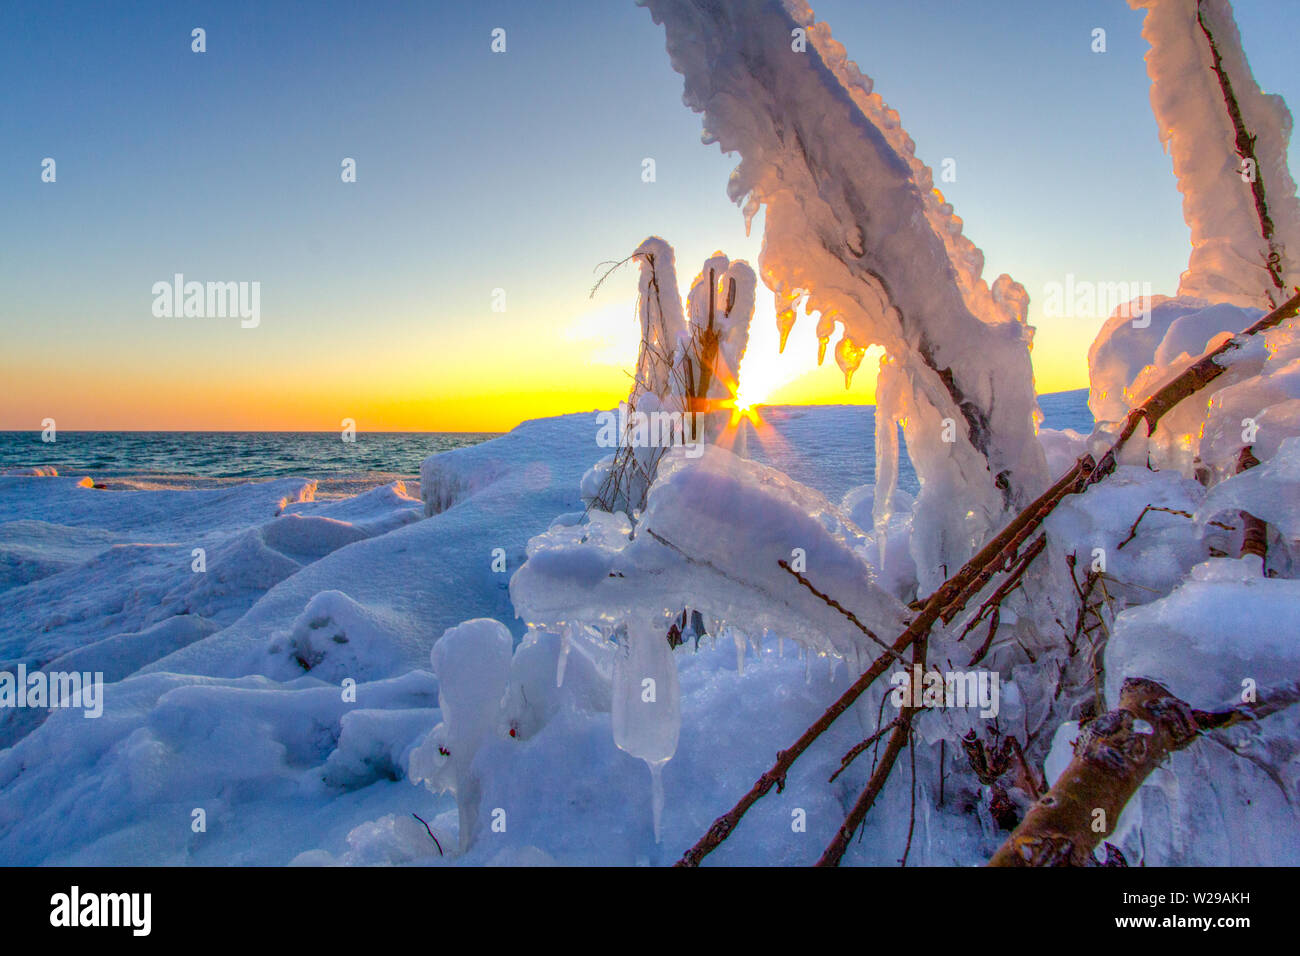 Formations de glace sur la côte du lac Michigan. Magnifique coucher de soleil sur la côte du Lac Michigan avec formations de glace sur la rive de Sleeping Bear Dunes. Banque D'Images